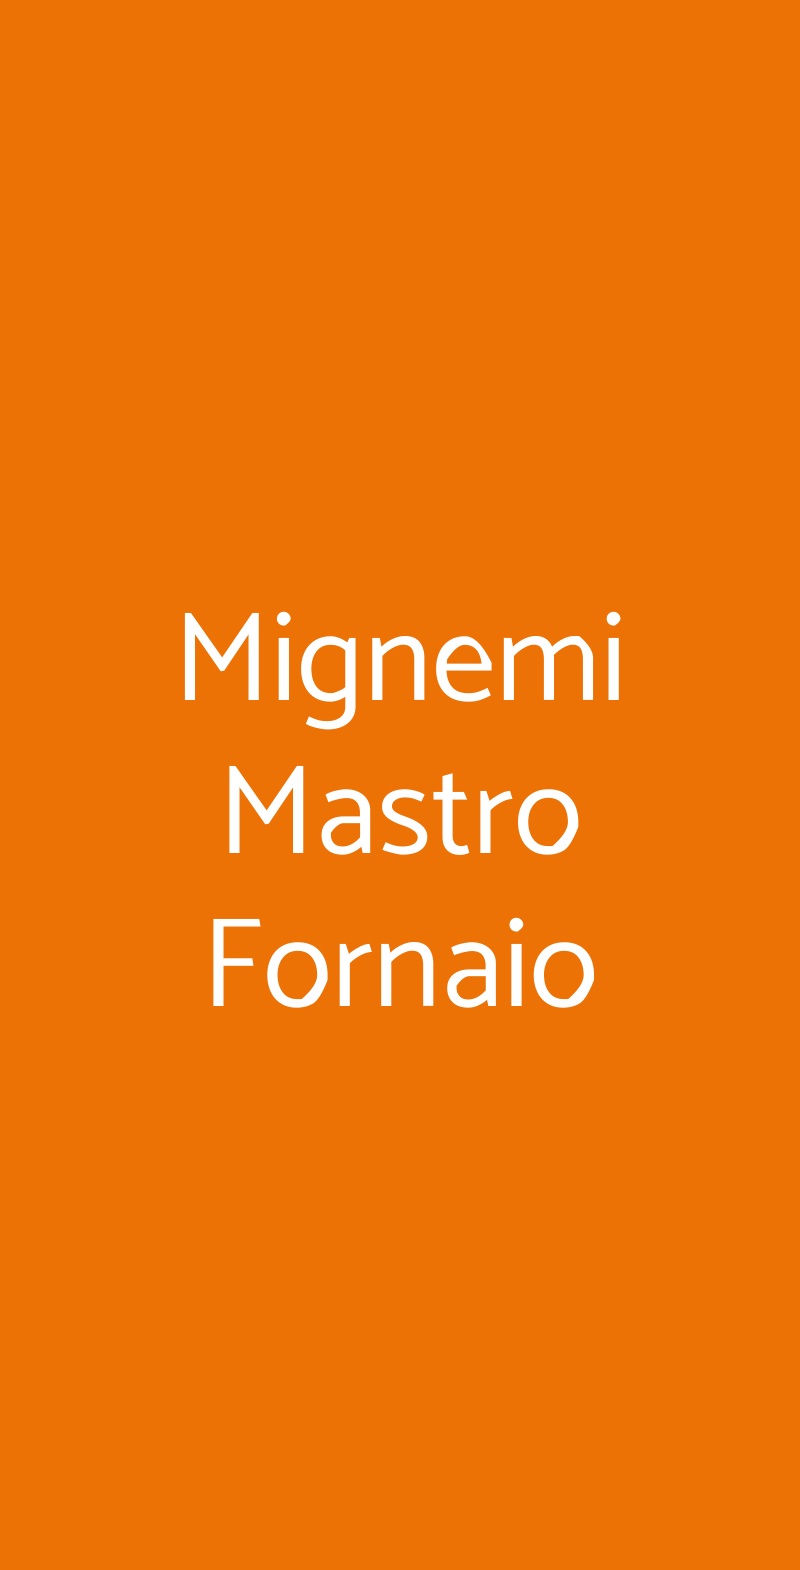 Mignemi Mastro Fornaio Catania menù 1 pagina